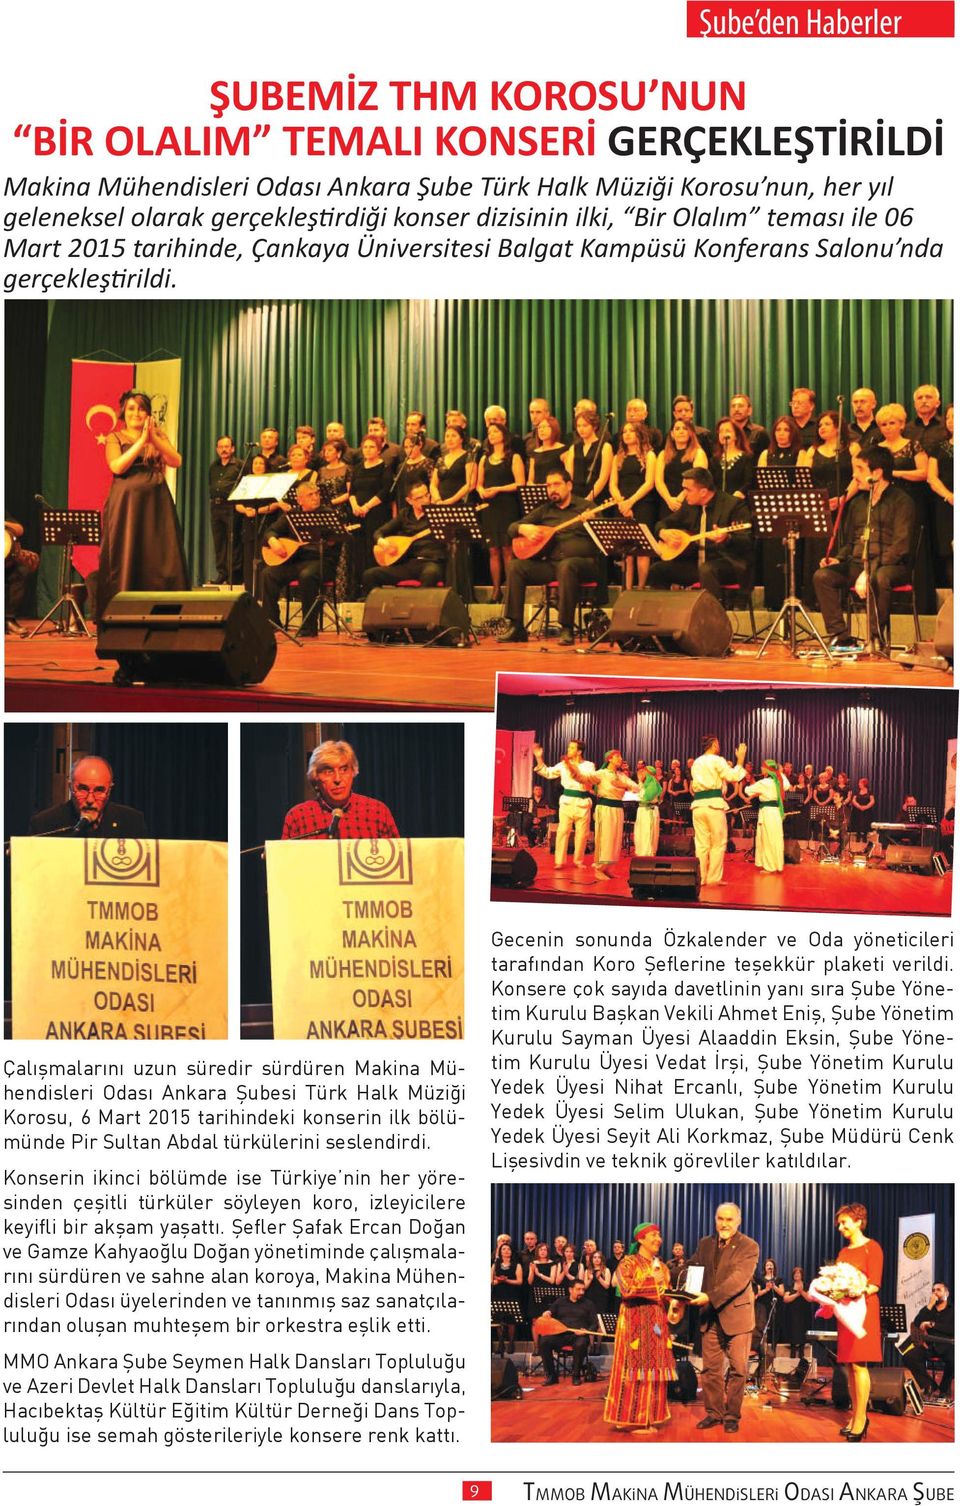 Çalışmalarını uzun süredir sürdüren Makina Mühendisleri Odası Ankara Şubesi Türk Halk Müziği Korosu, 6 Mart 2015 tarihindeki konserin ilk bölümünde Pir Sultan Abdal türkülerini seslendirdi.